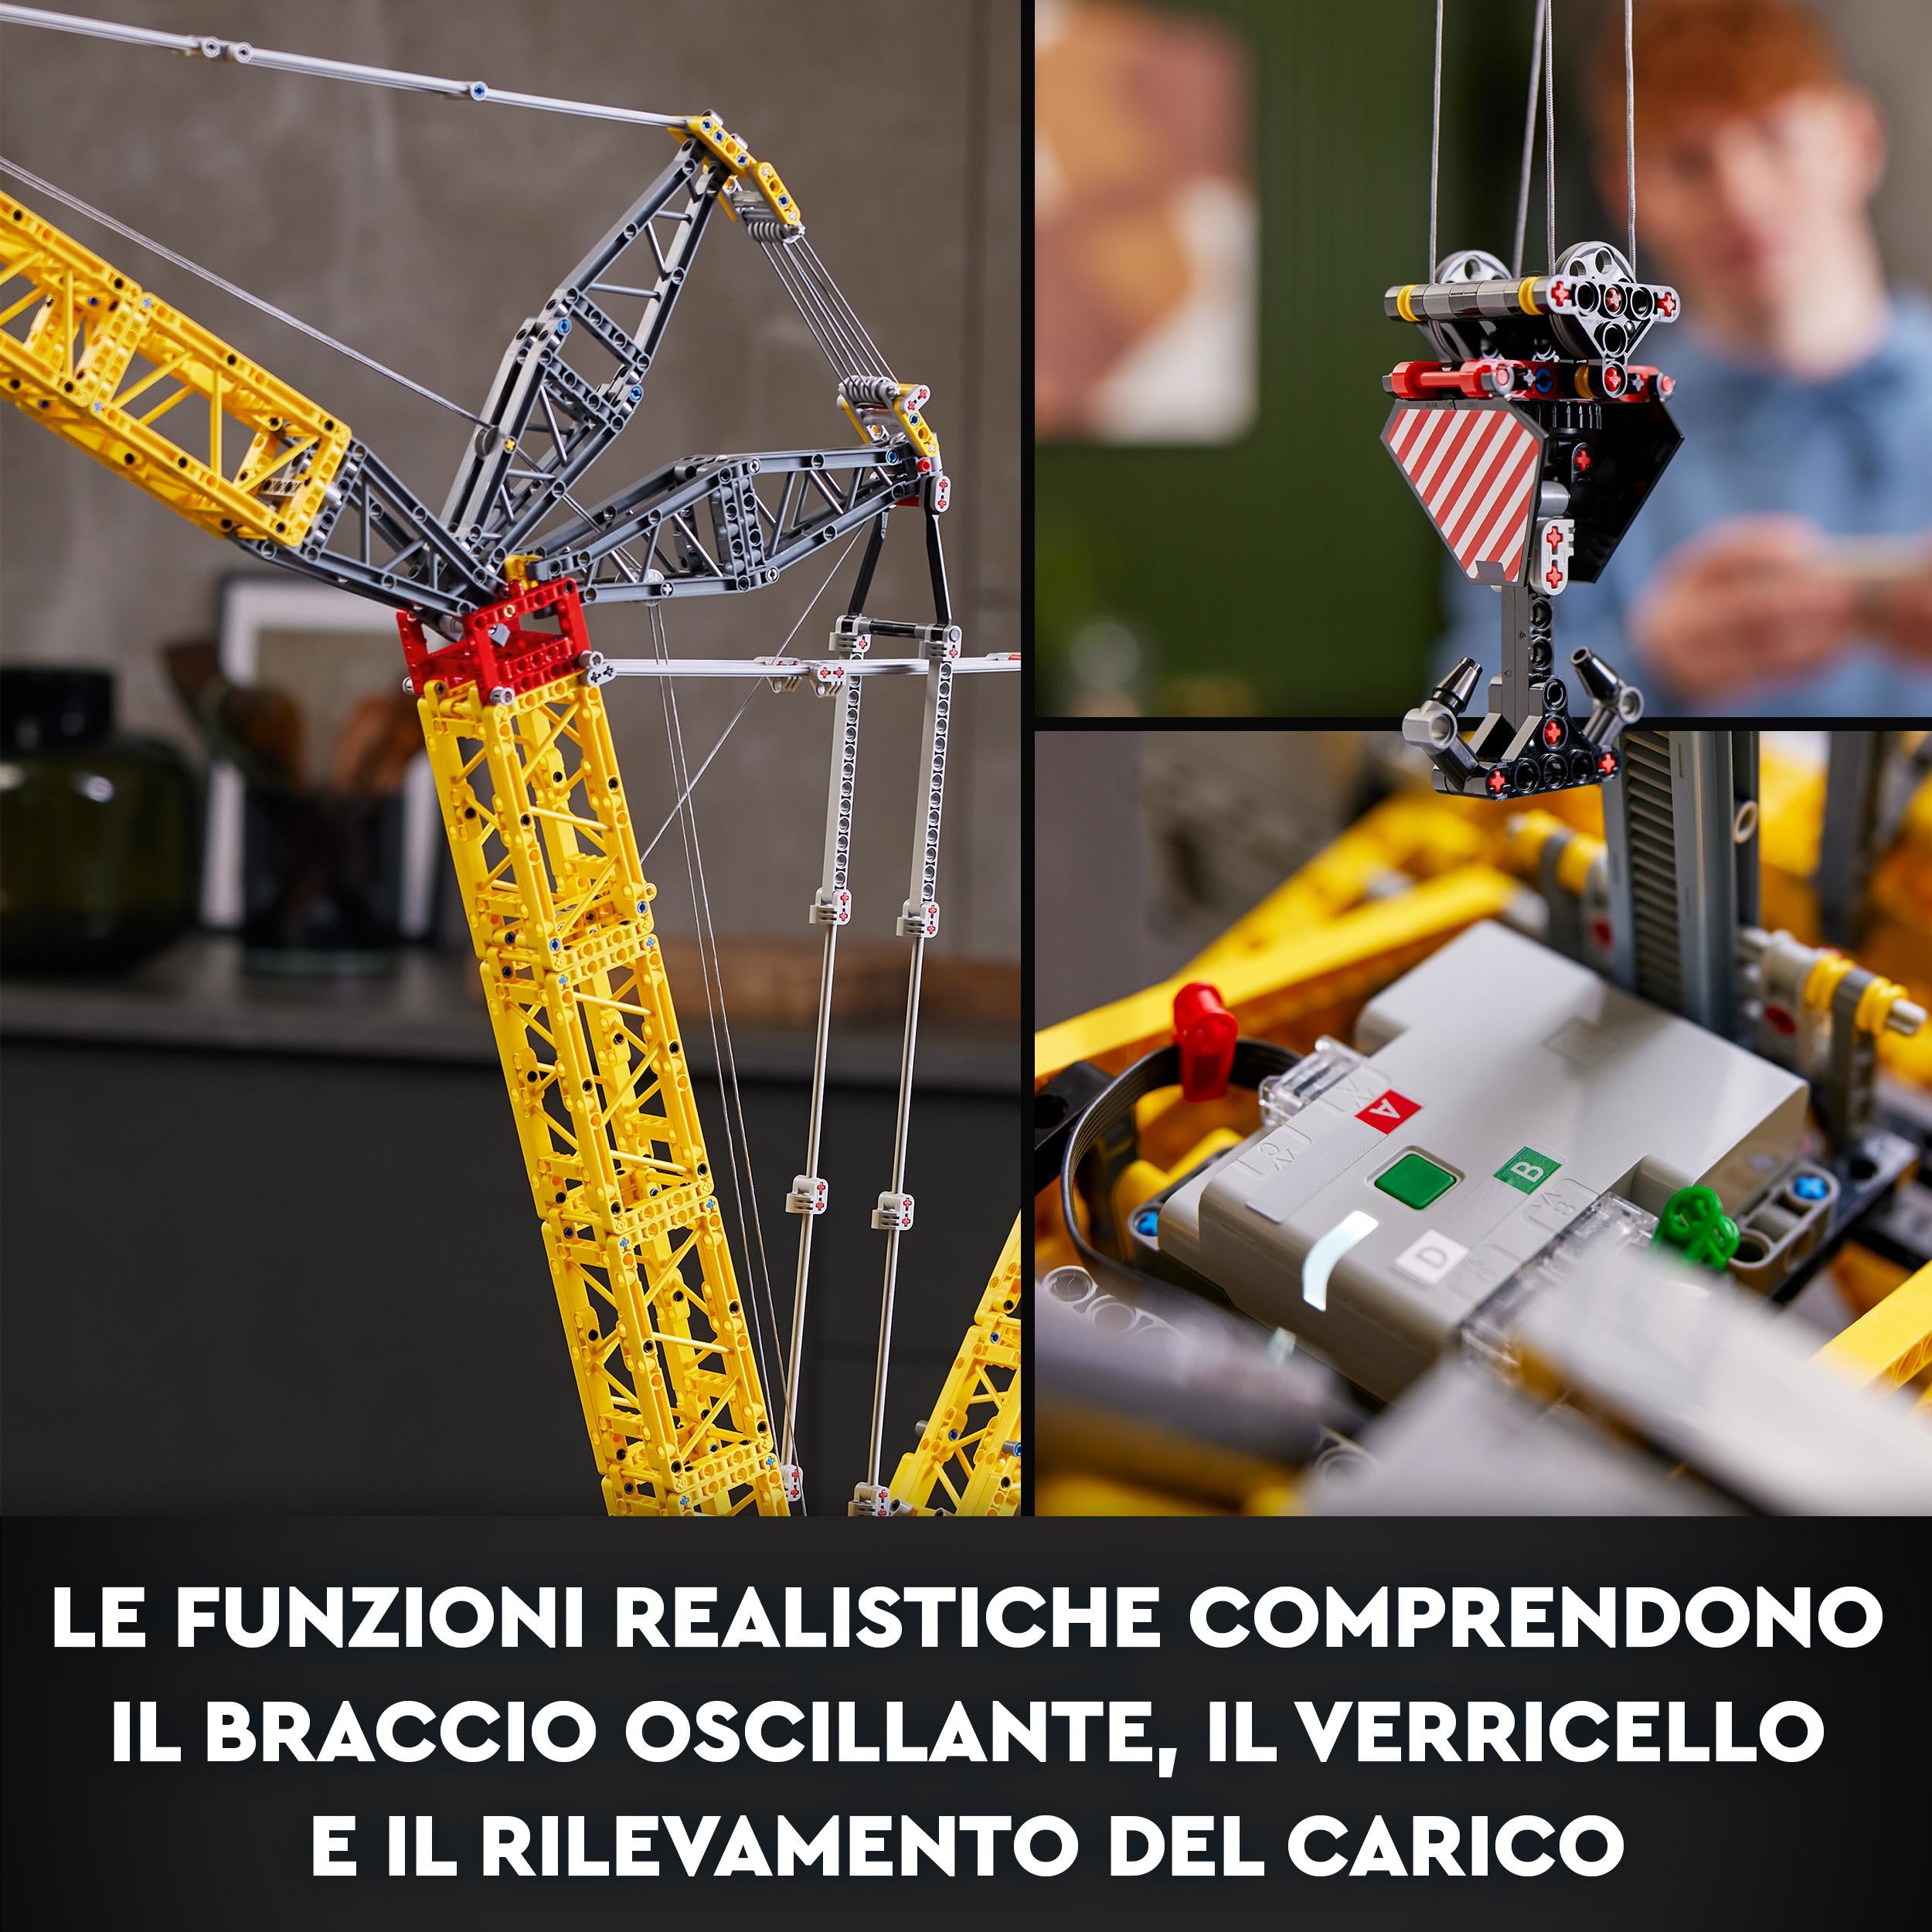 42146 LEGO Technic Gru cingolata Liebherr LR 13000